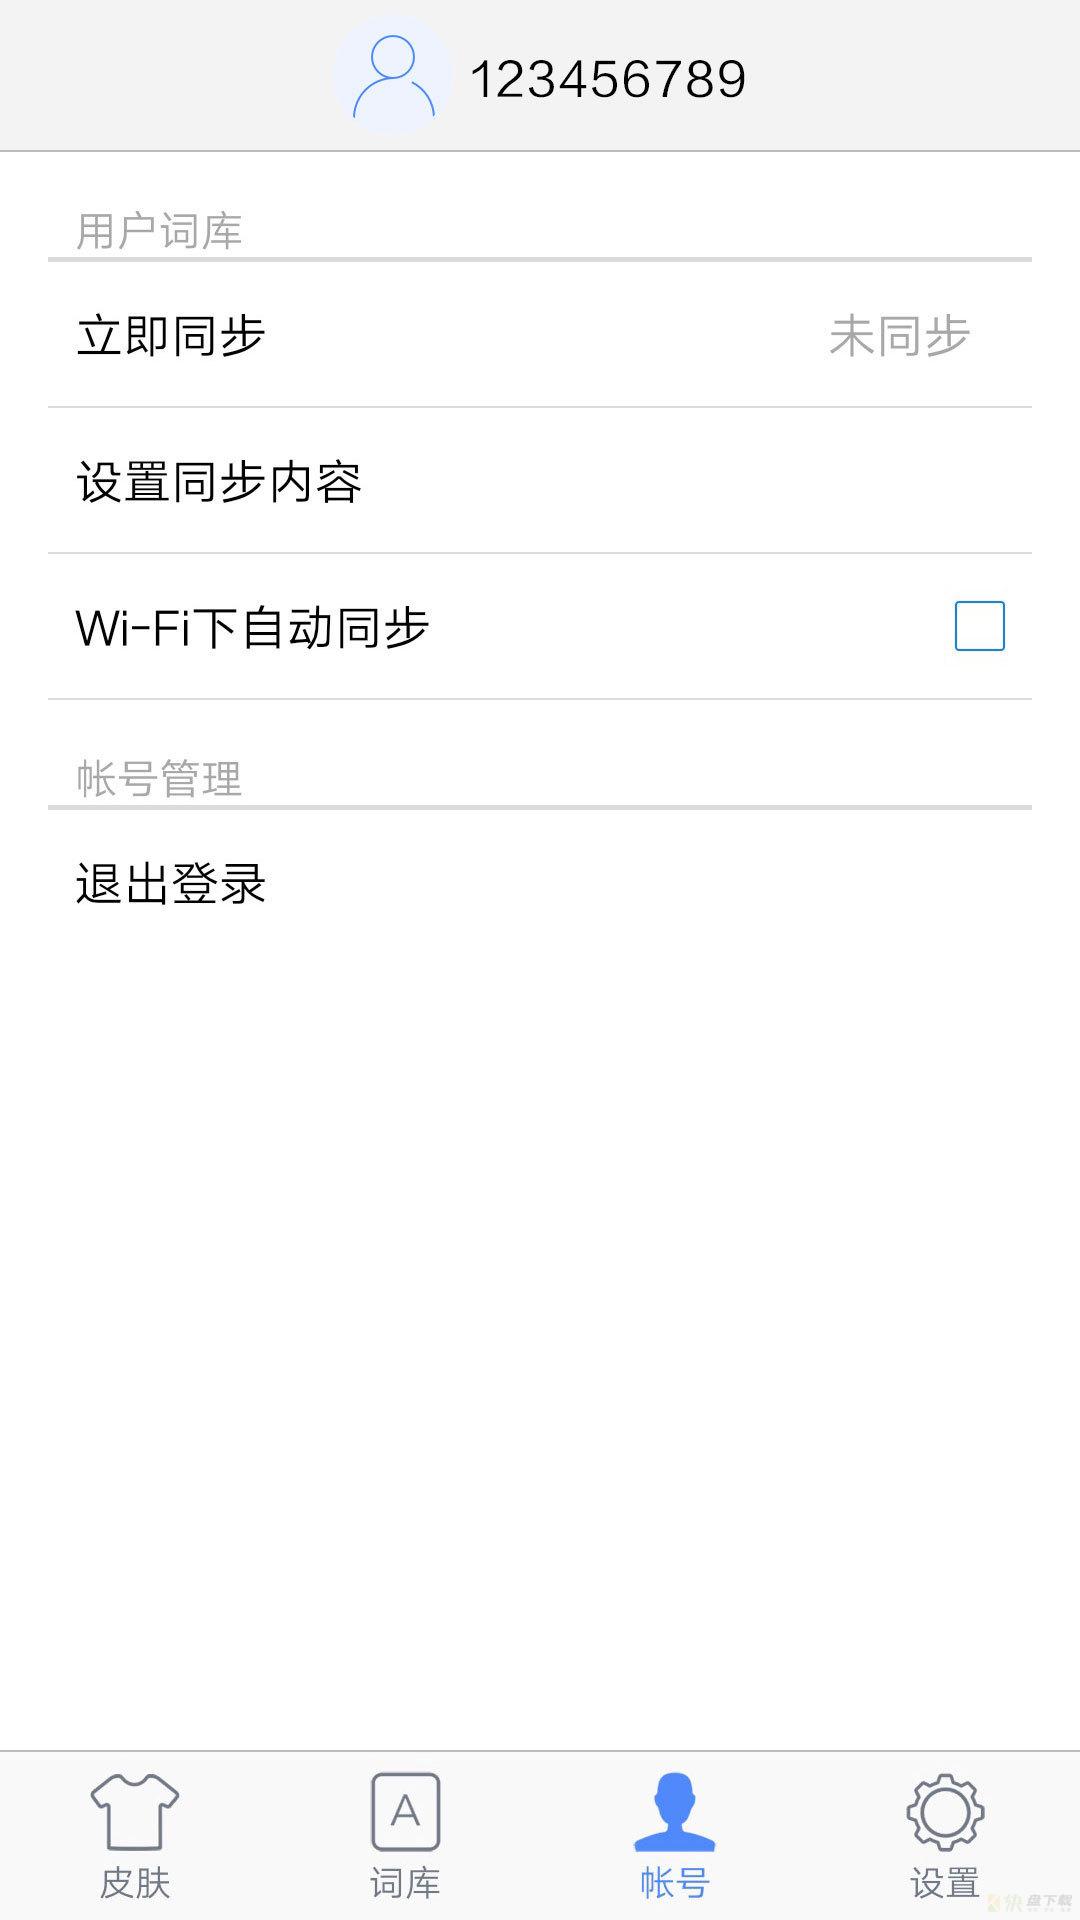 谷歌粤语输入法安卓版 v4.3.1.128147547 免费破解版